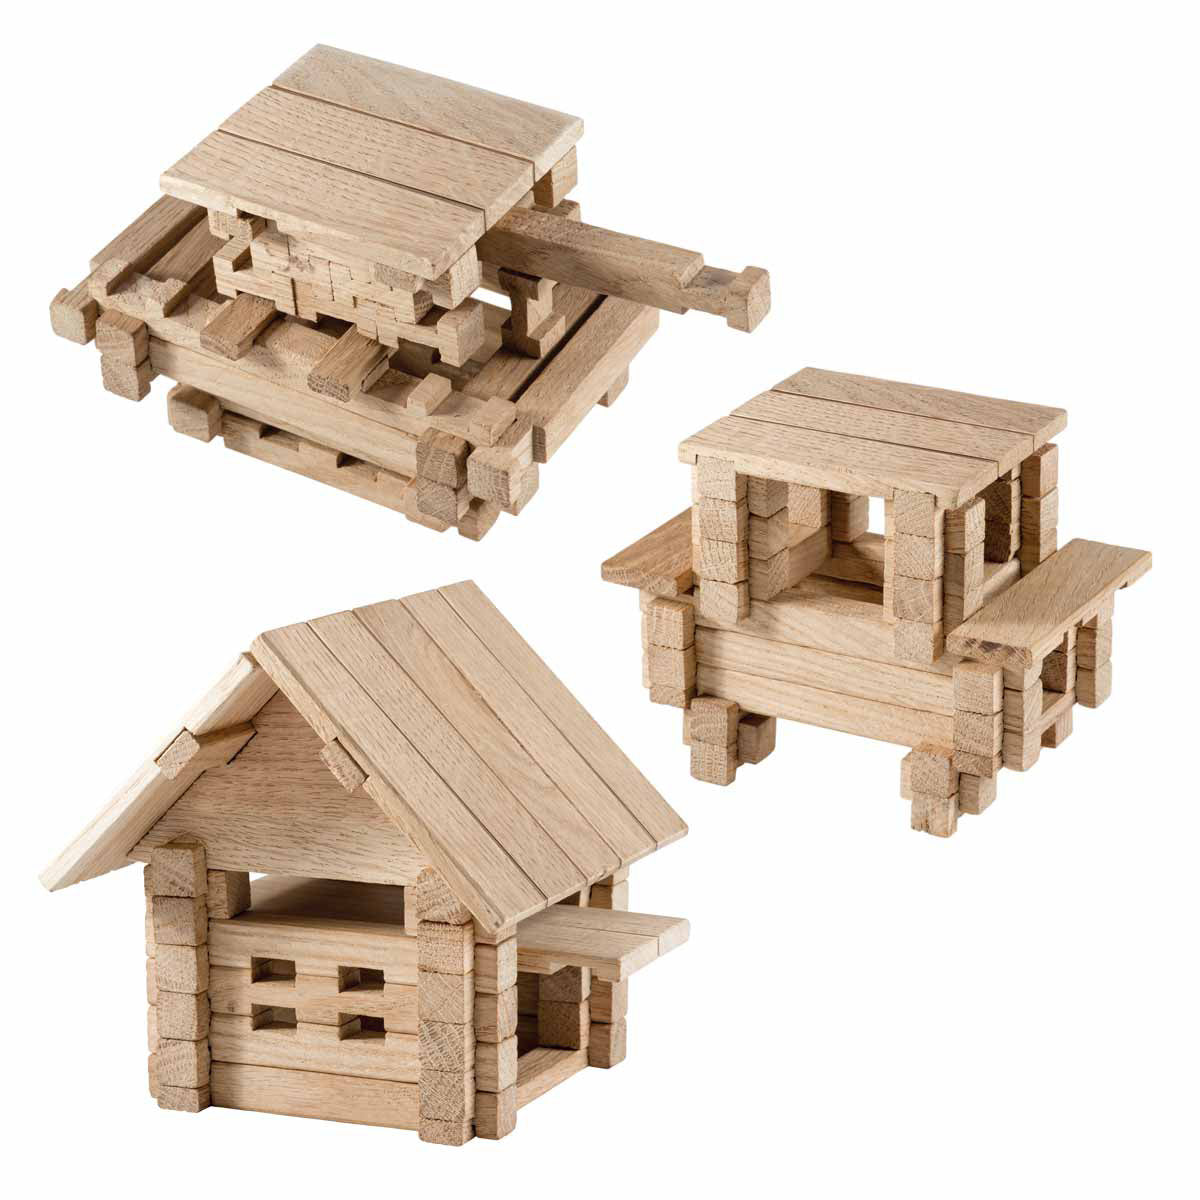 Igroteco деревянный конструктор - домик для детей с верандой, 102 шт.